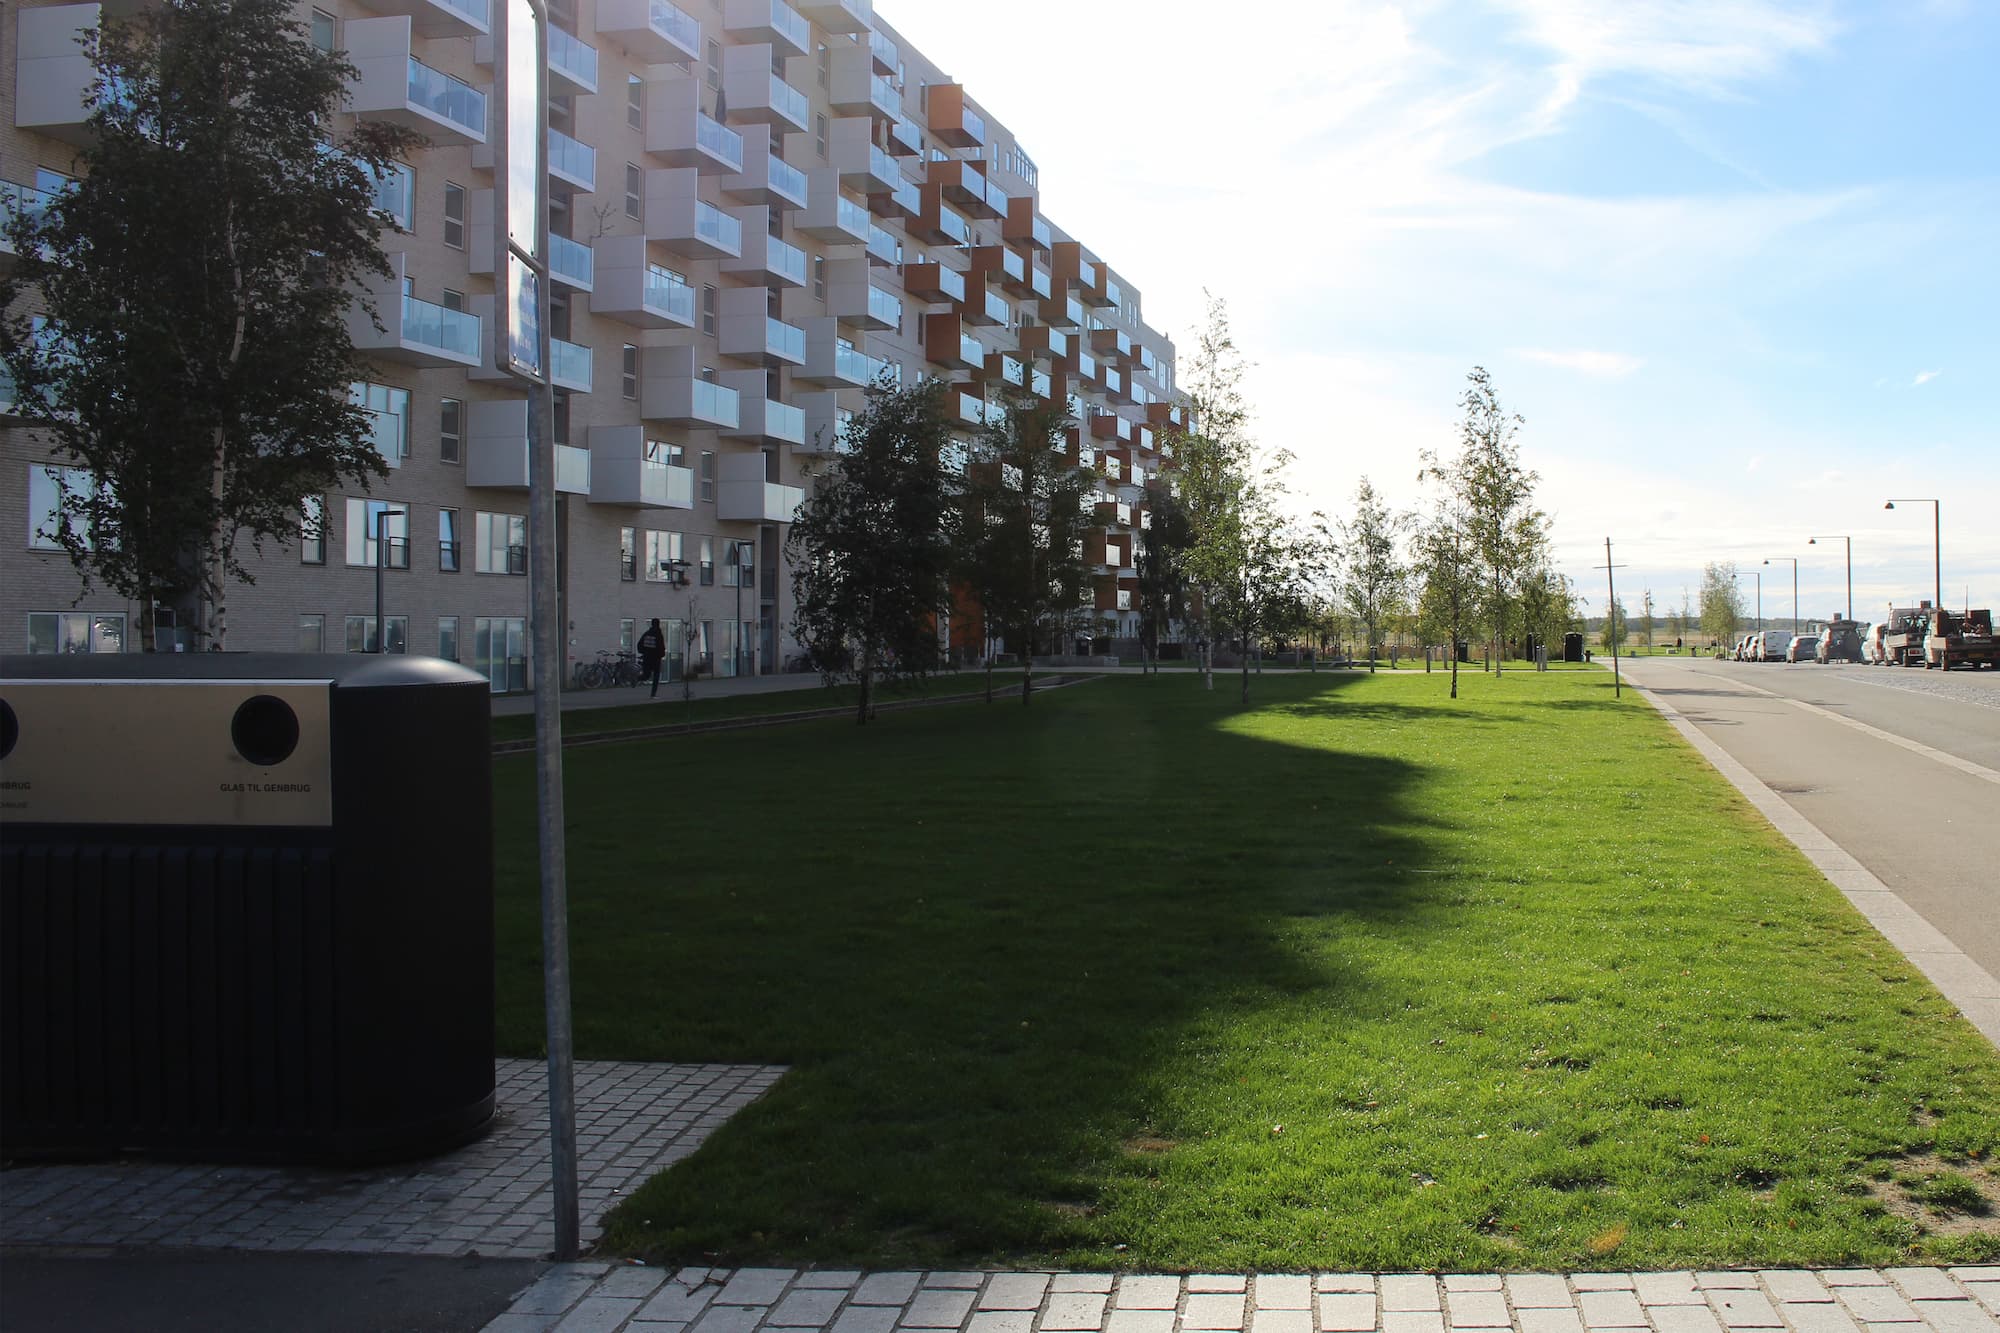 Græsstykket ud for Else Alfelts Vej 89-95, eller etape 15 ifølge Helhedsplanen, er blandt de næste områder i Ørestad Syd, som grundejerforeningen vil give et grønt løft.